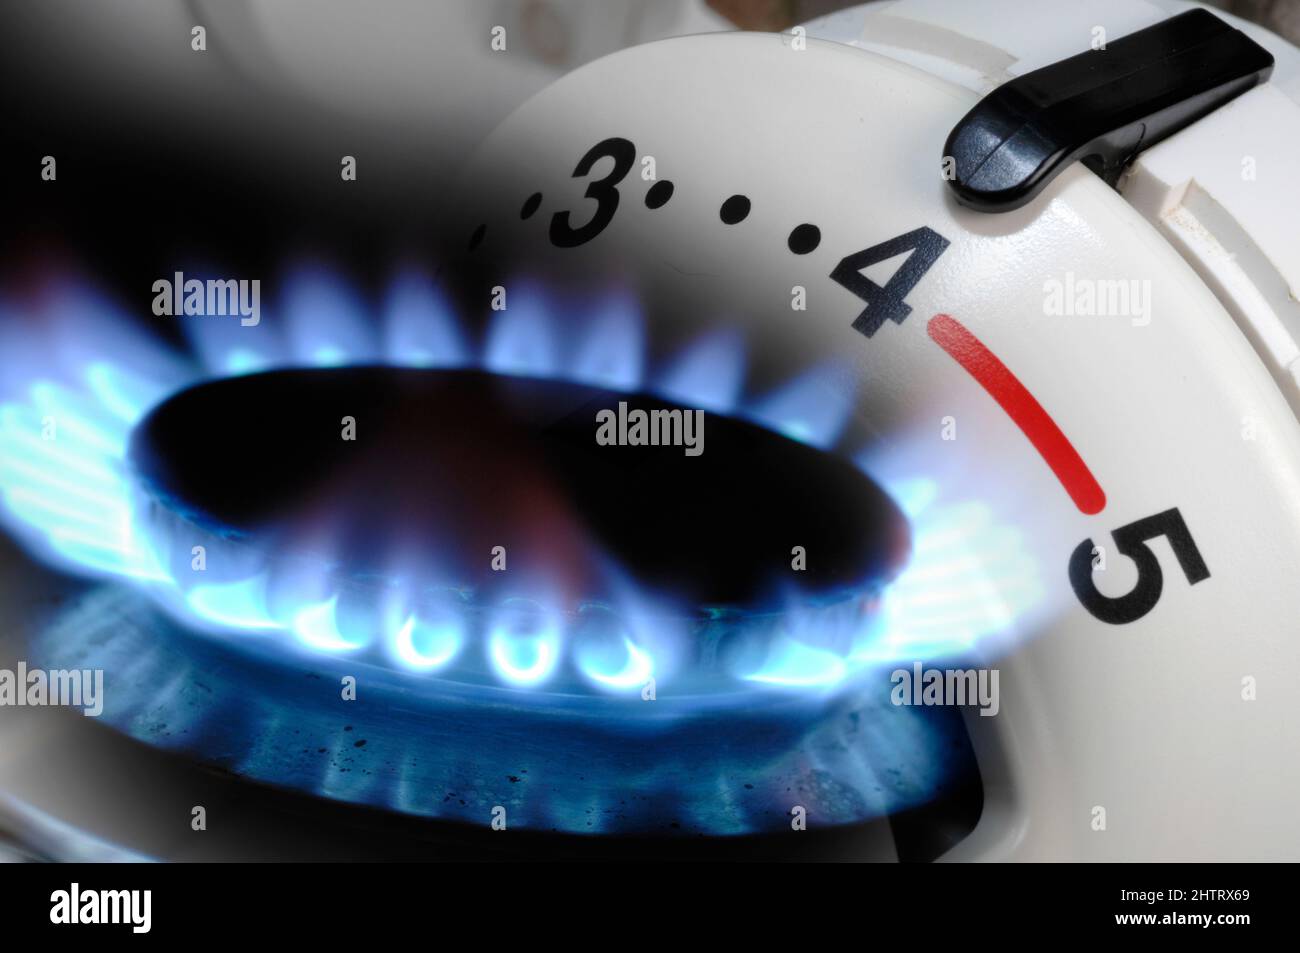 Steigende Energiekosten mit Gaspreis und Heizung Stock Photo